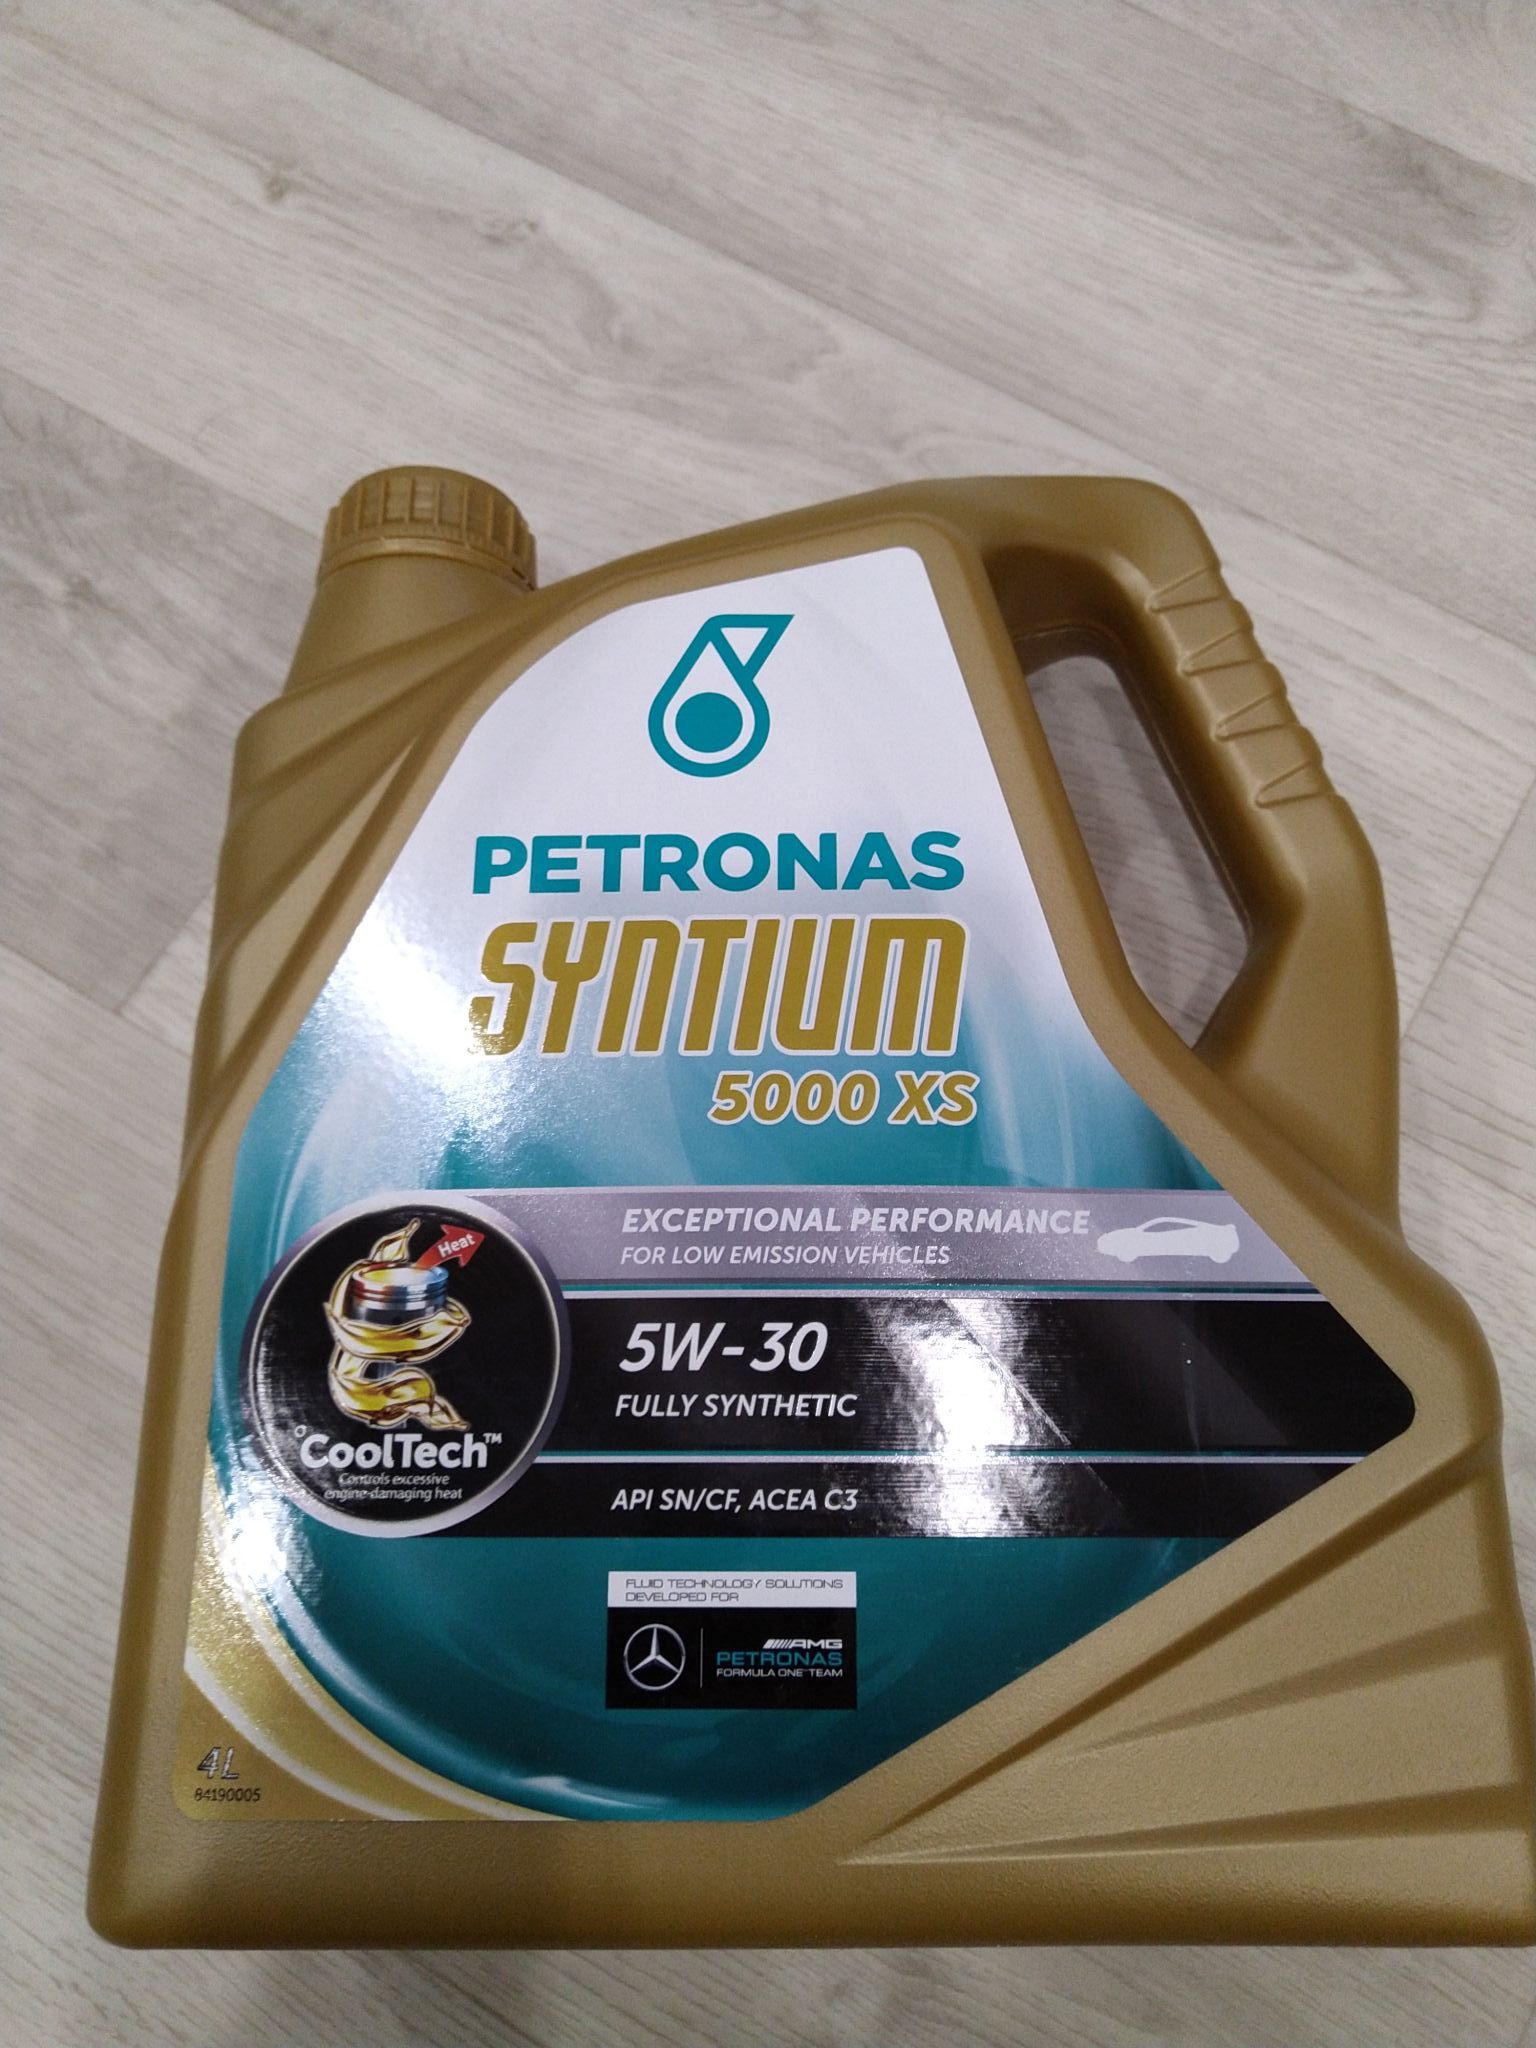 Petronas 5000 av. Petronas 5w30 5000xs. Petronas Syntium 5000 DM 5w-30. Petronas 5w-30 5000 XS 5l. Петронас Синтиум 5000 XS 5w30.